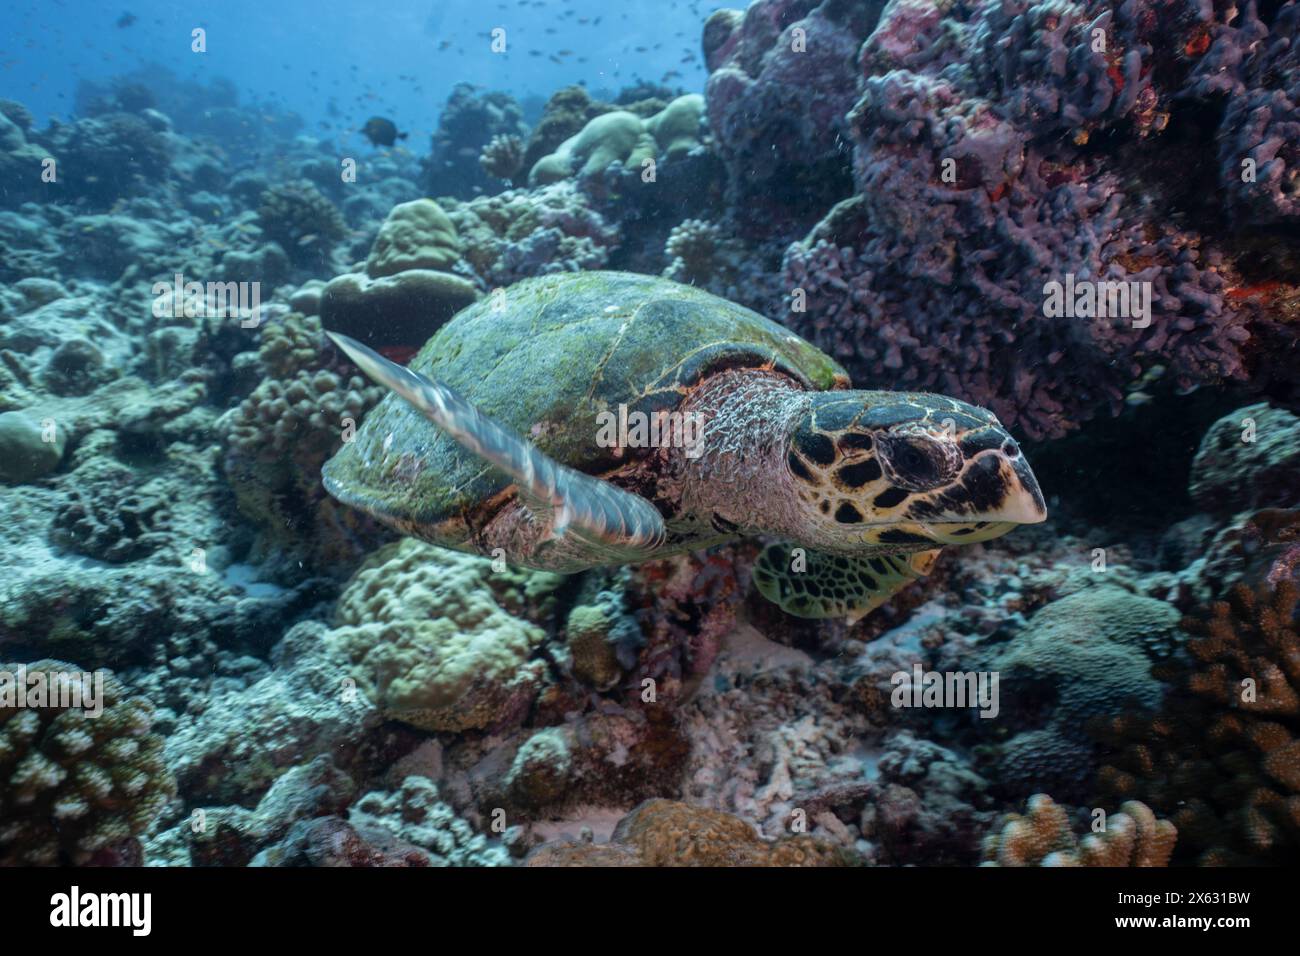 Eine Karettschildkröte (Eretmochelys imbricata) erkundet ein lebendiges Korallenriff. Diese vom Aussterben bedrohte Schildkröte zeichnet sich durch ihren scharfen, geschwungenen Schnabel und aus Stockfoto